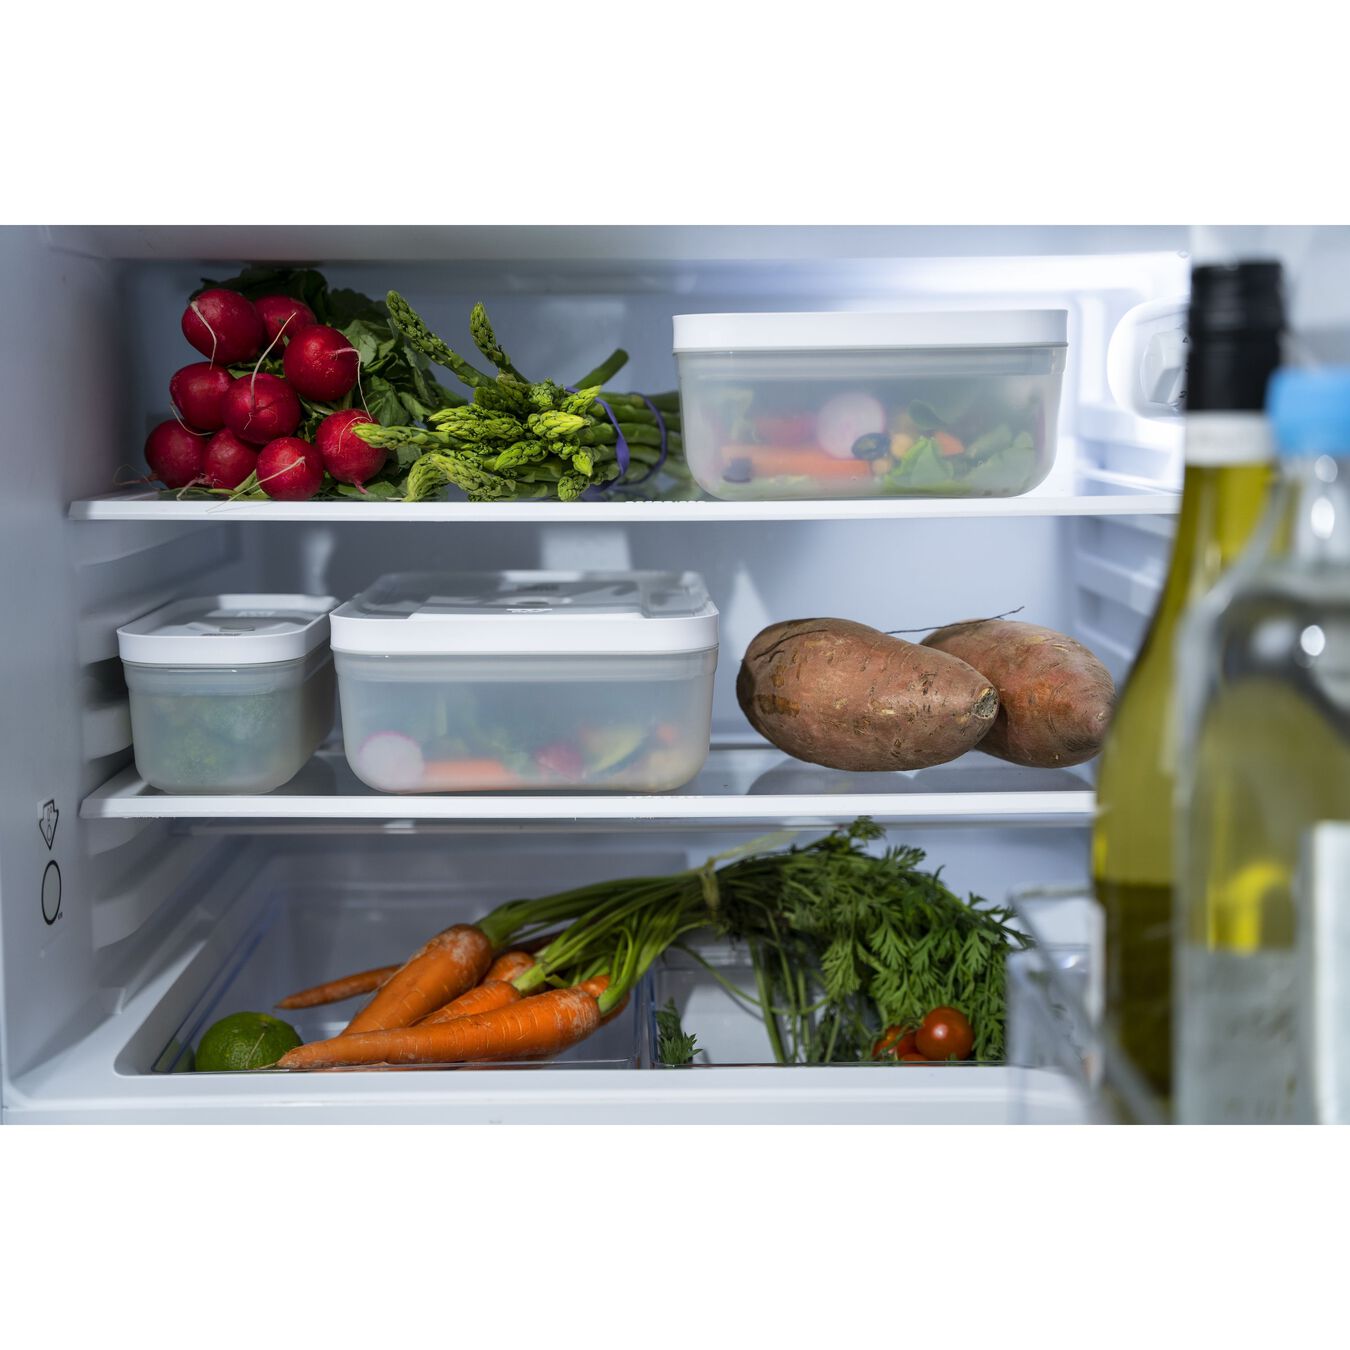 Recipiente frigorífico, Plástico, semitransparente-Gris,,large 5